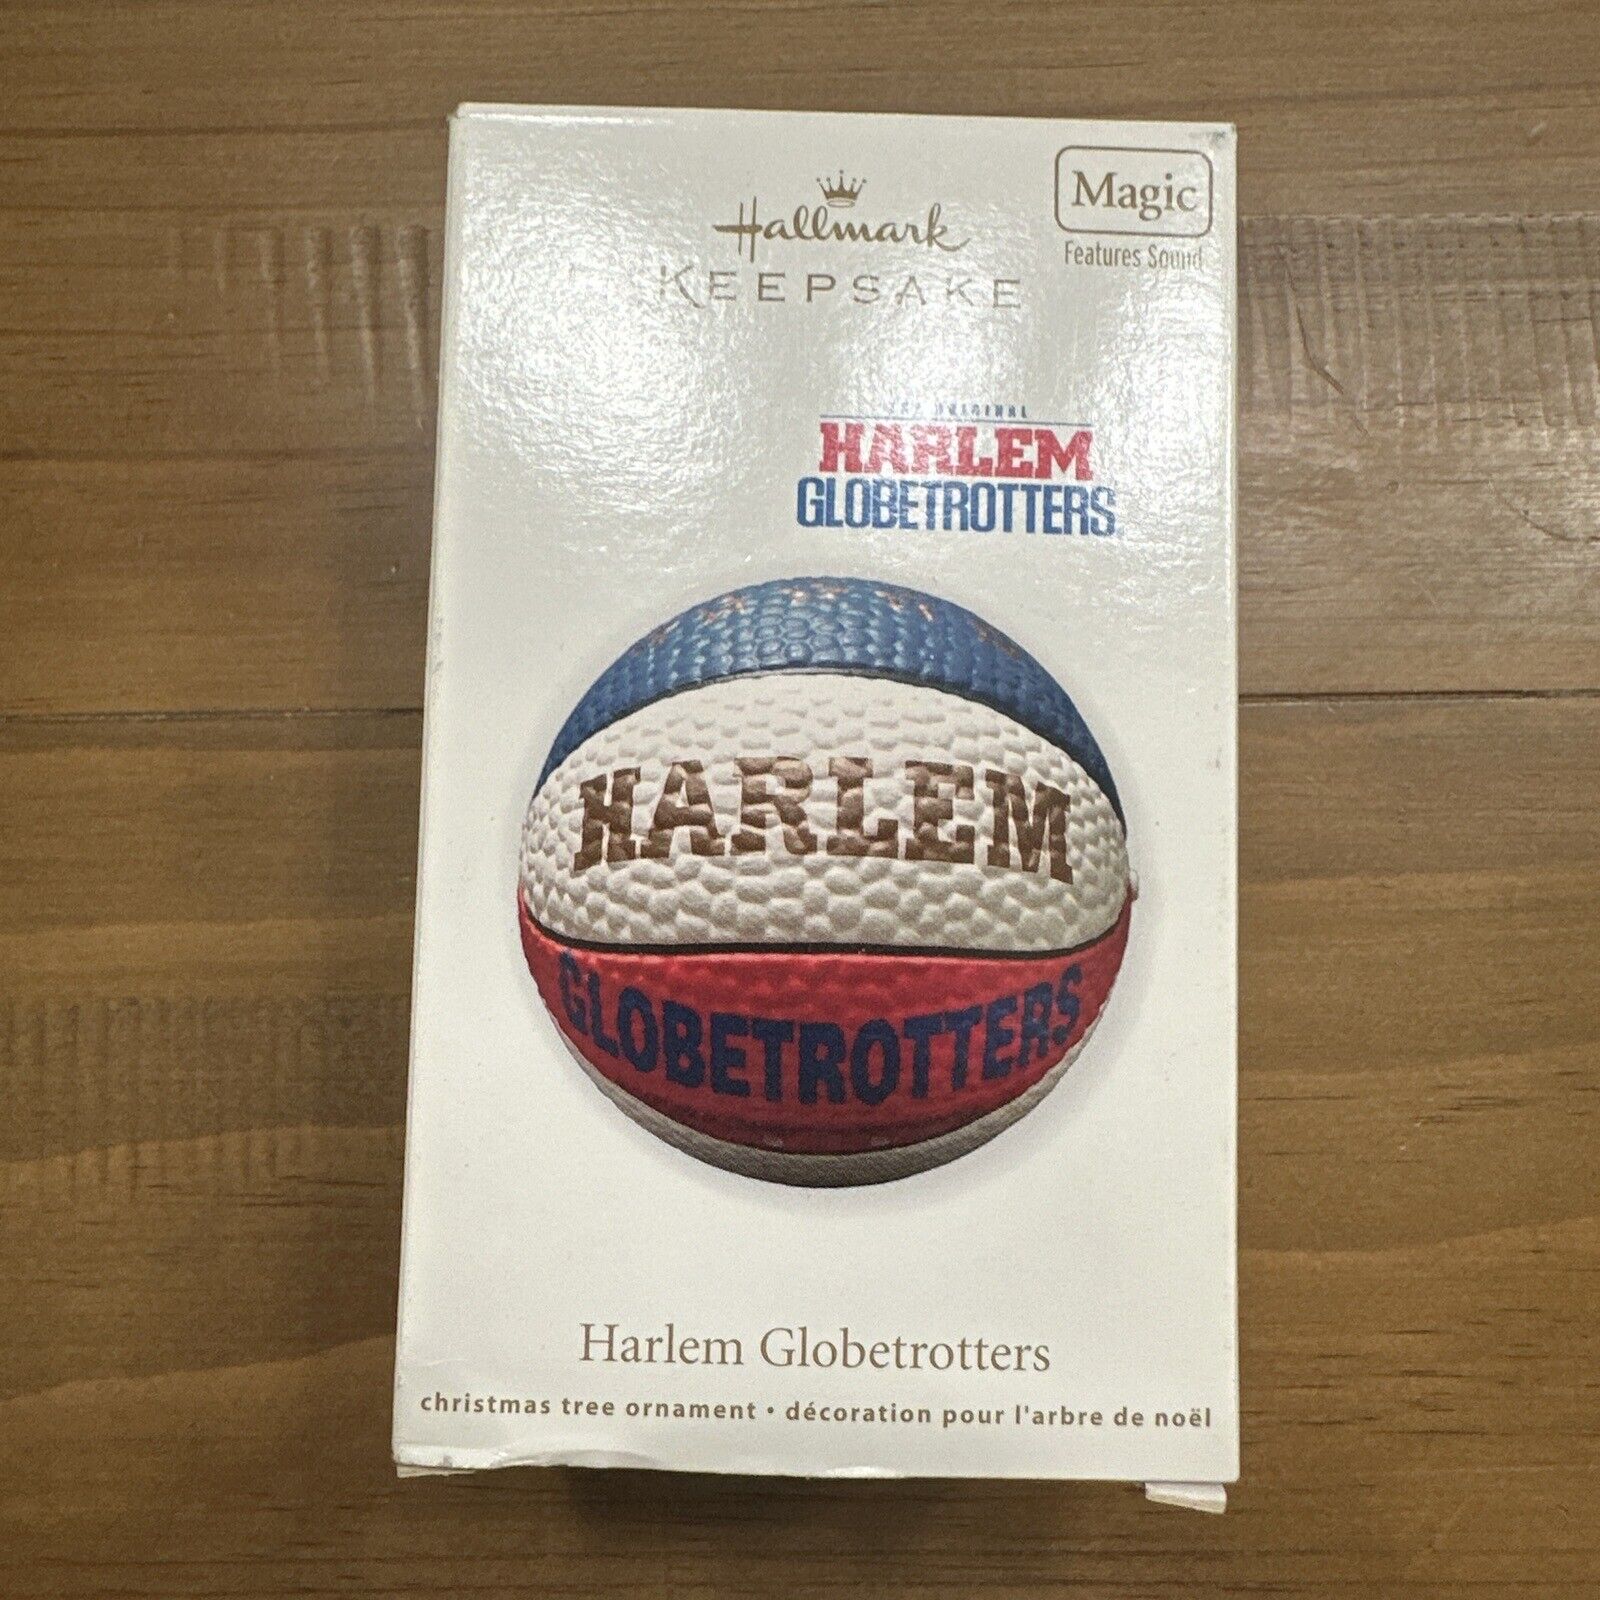 2011 Hallmark Keepsake Magic Ornament The Original Harlem Globetrotters